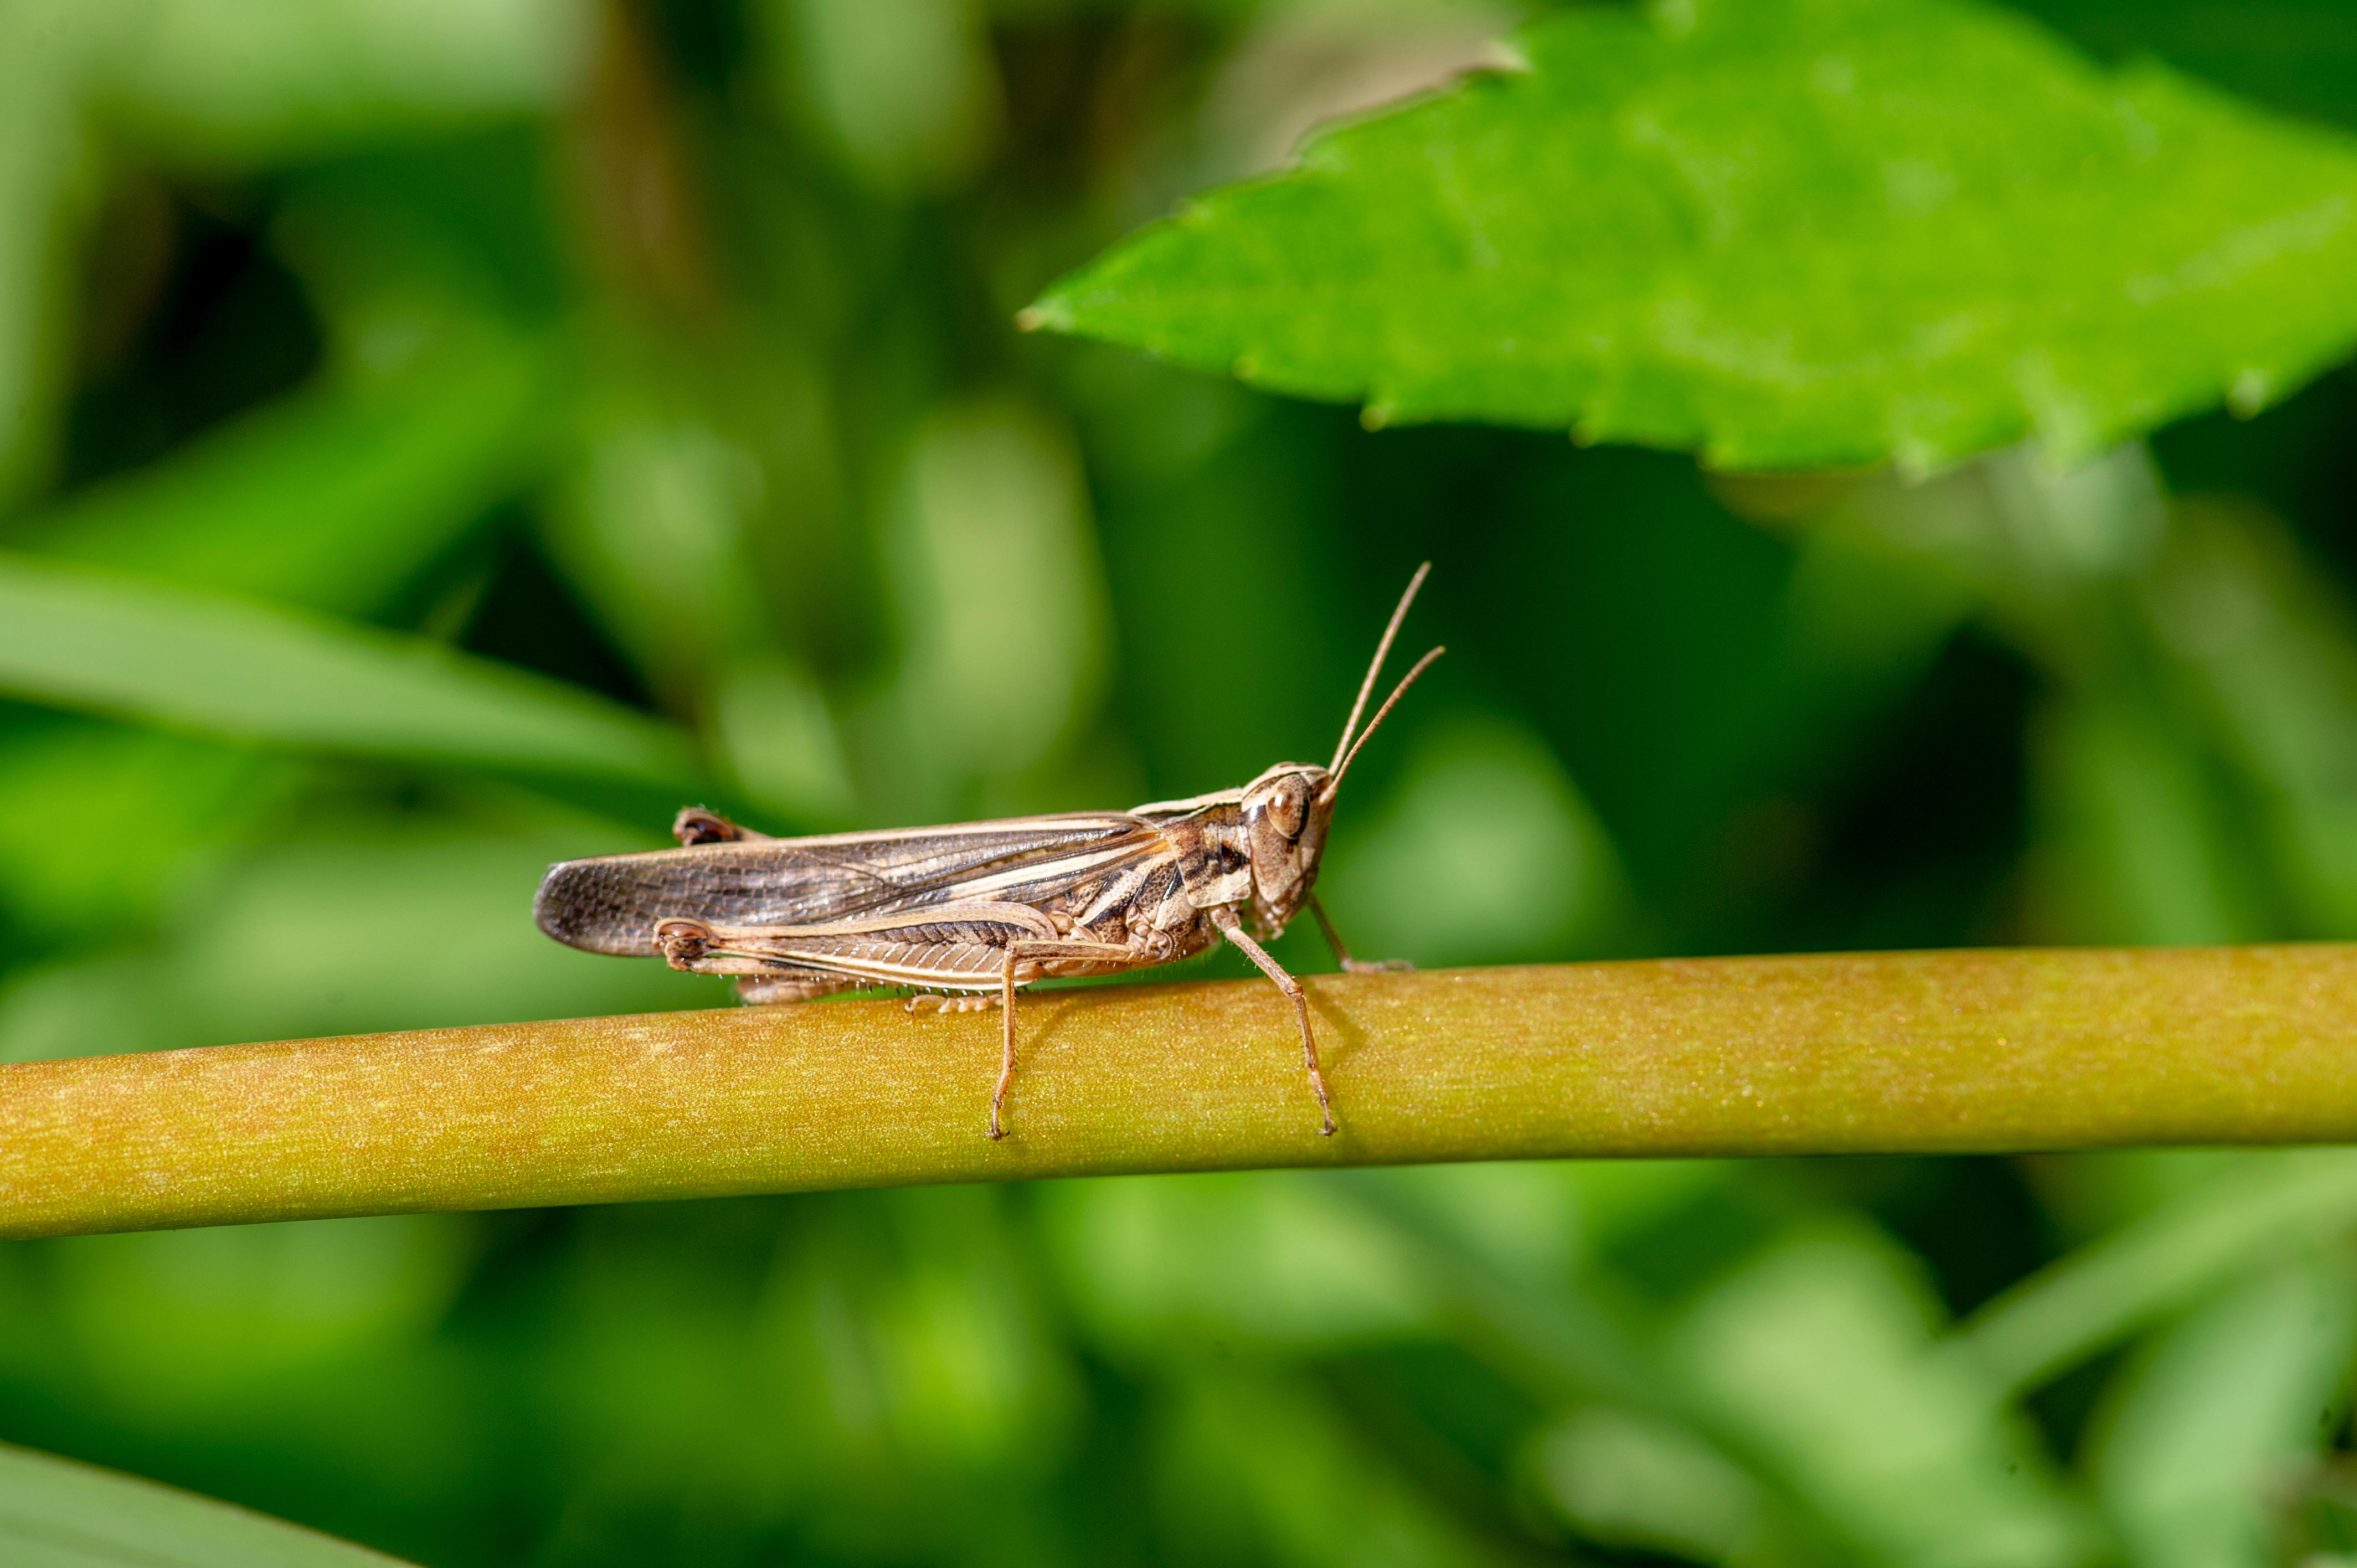 マダラバッタ 別名 ヒメバッタ 虫の写真と生態なら昆虫写真図鑑 ムシミル